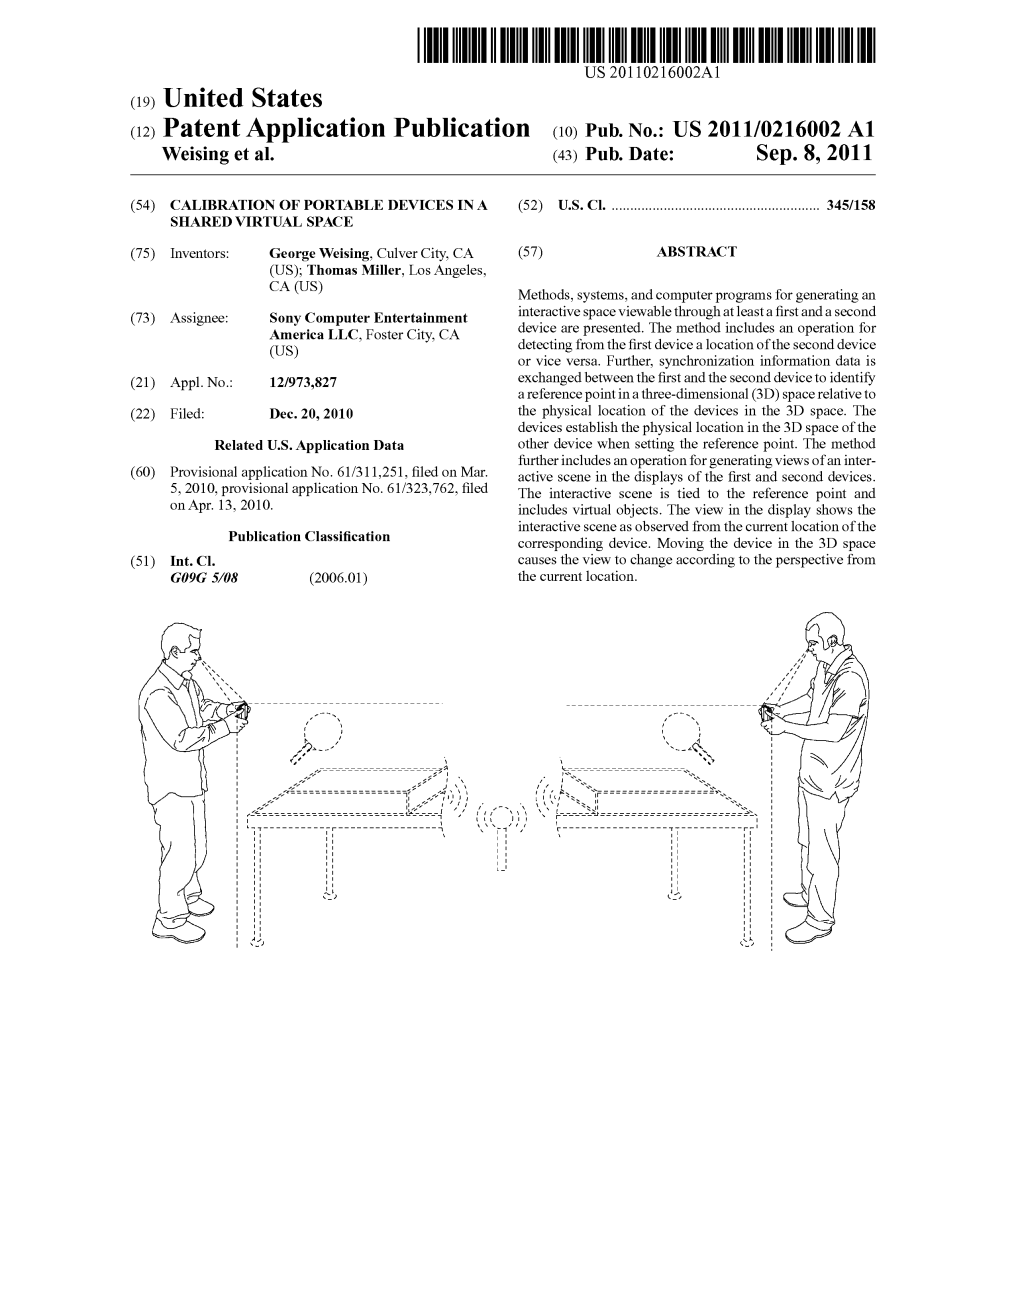 (12) Patent Application Publication (10) Pub. No.: US 2011/0216002 A1 Weising Et Al